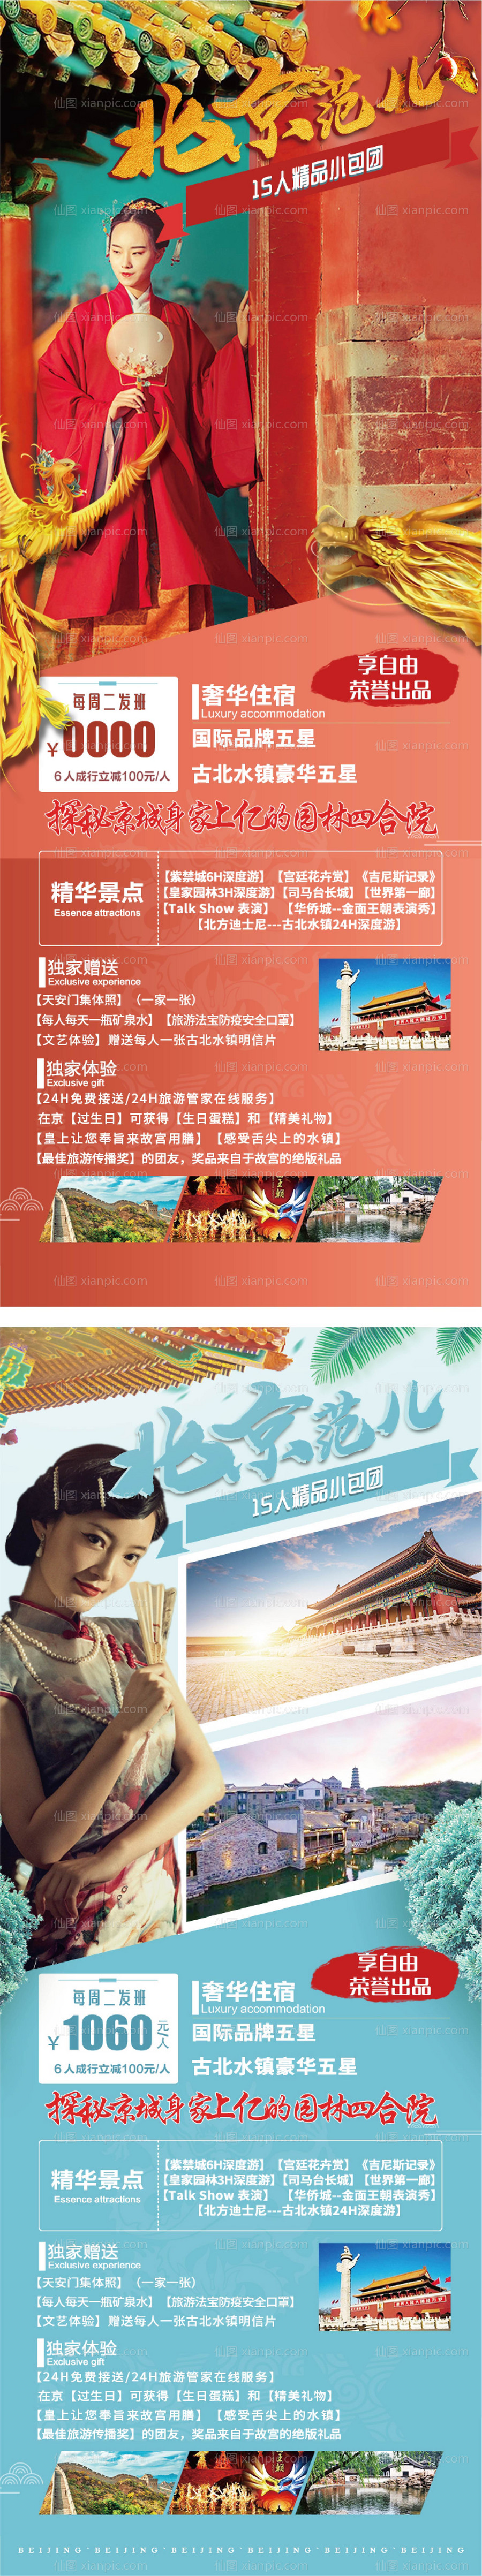 素材乐-北京旅游海报系列